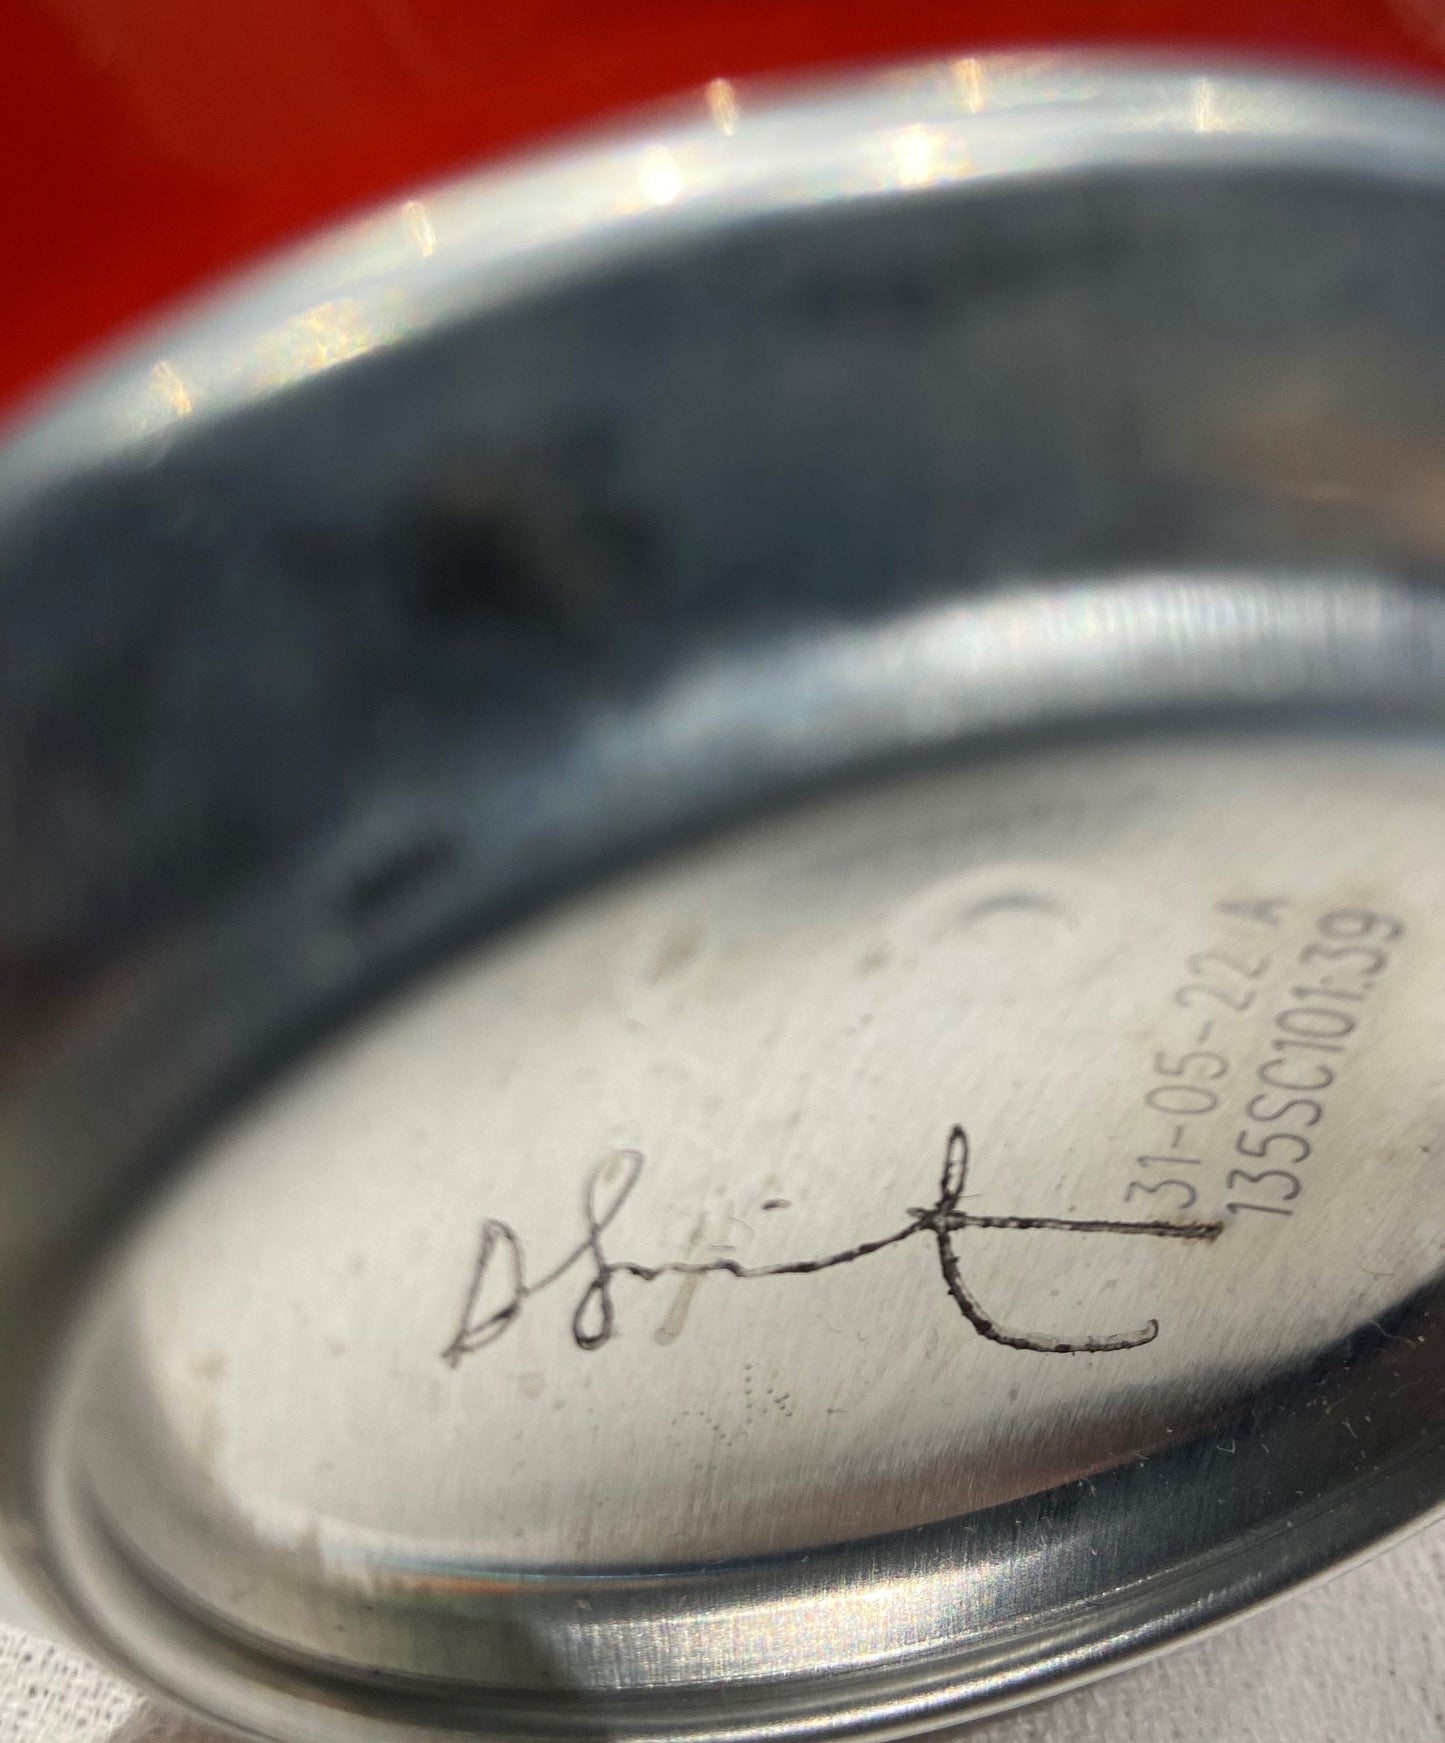 Damien Hirst signierte eine Coca-Cola-Dose aus der Gagosian Gallery